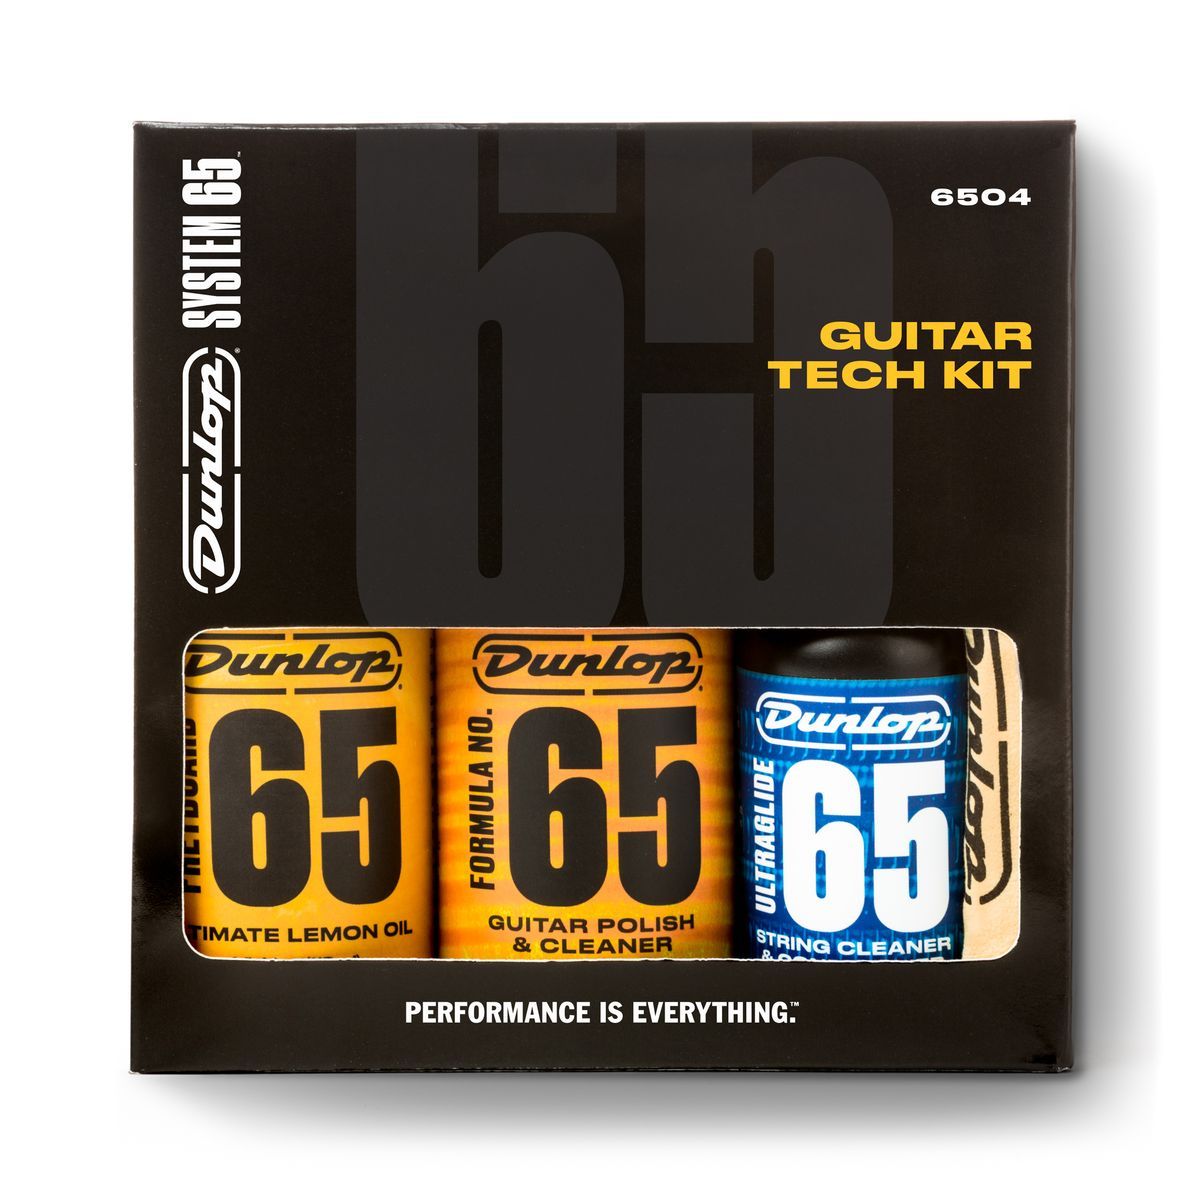 Прочие гитарные аксессуары Dunlop 6504 System 65 Guitar Tech Kit